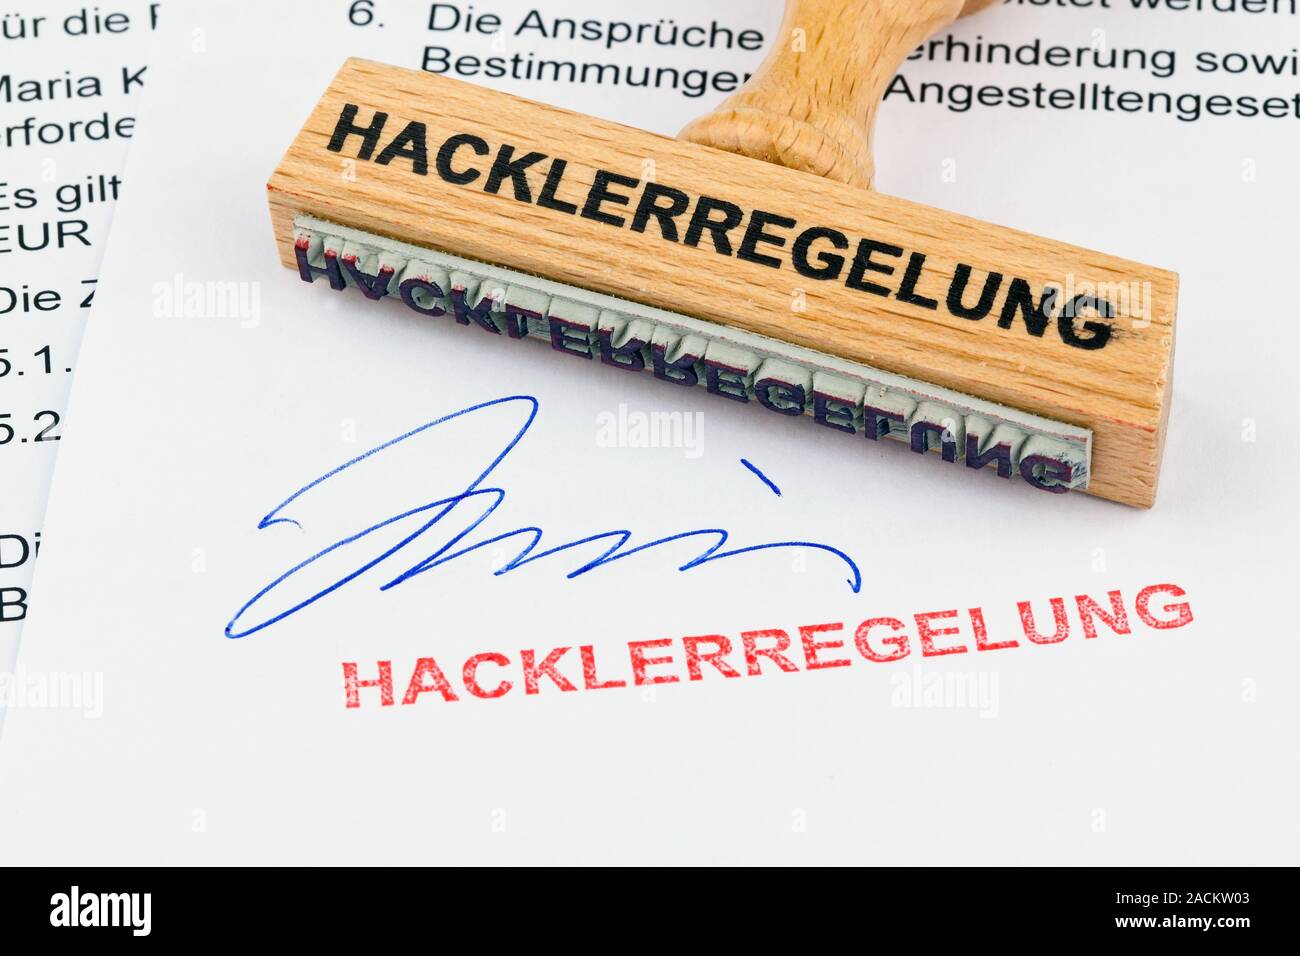 Wooden stamp on document: Hackler regulation Stock Photo